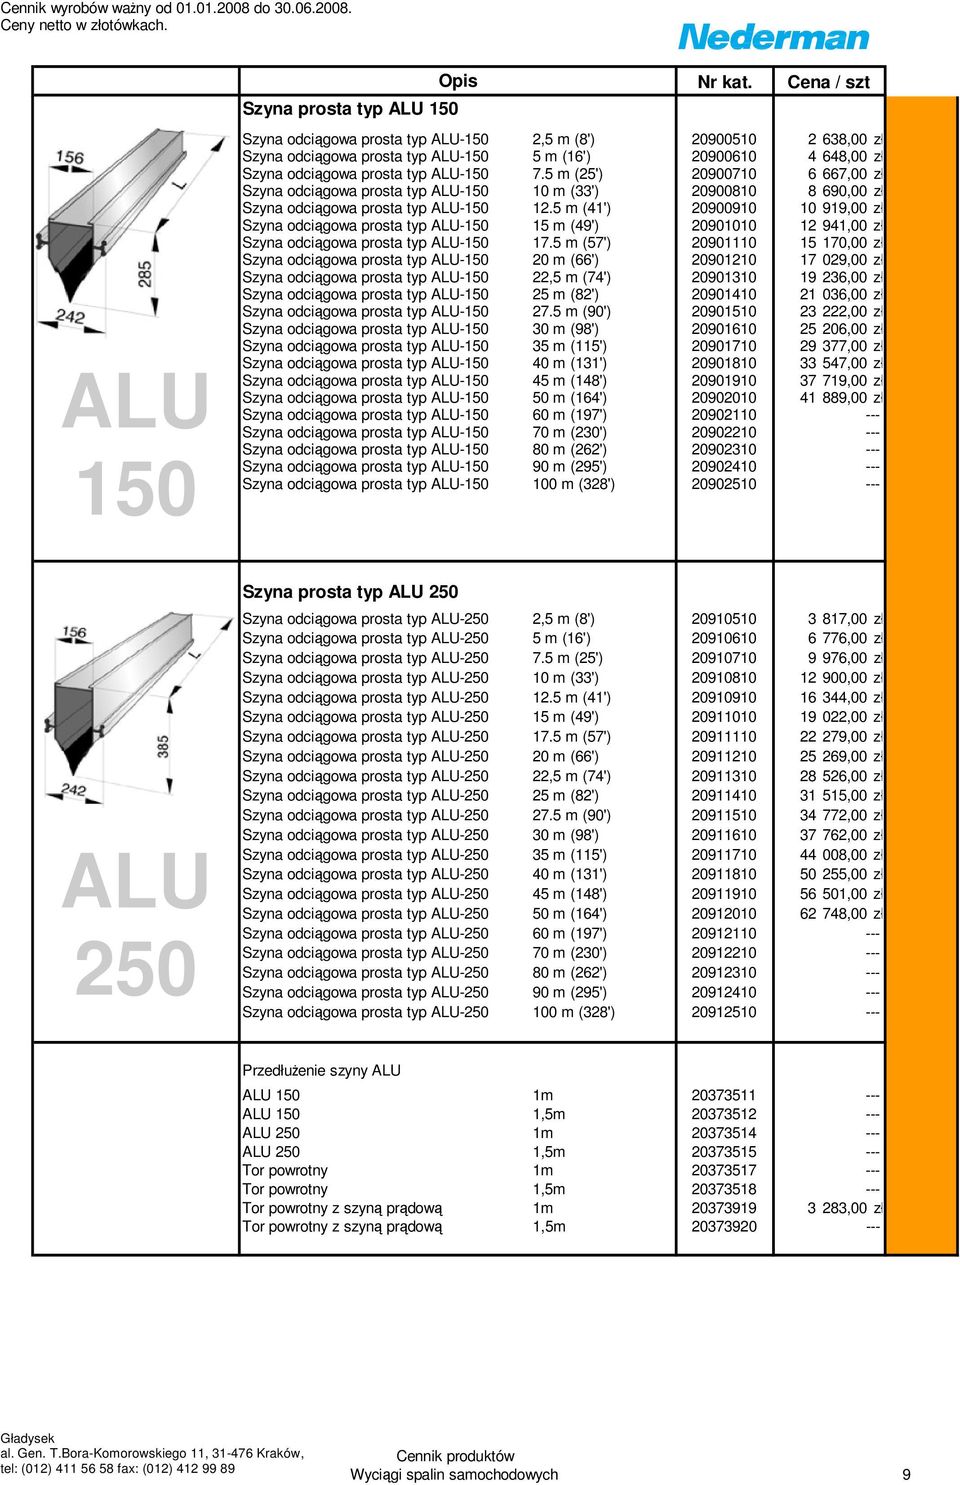 5 m (25') 20900710 6 667,00 zł Szyna odciągowa prosta typ ALU-150 10 m (33') 20900810 8 690,00 zł Szyna odciągowa prosta typ ALU-150 12.